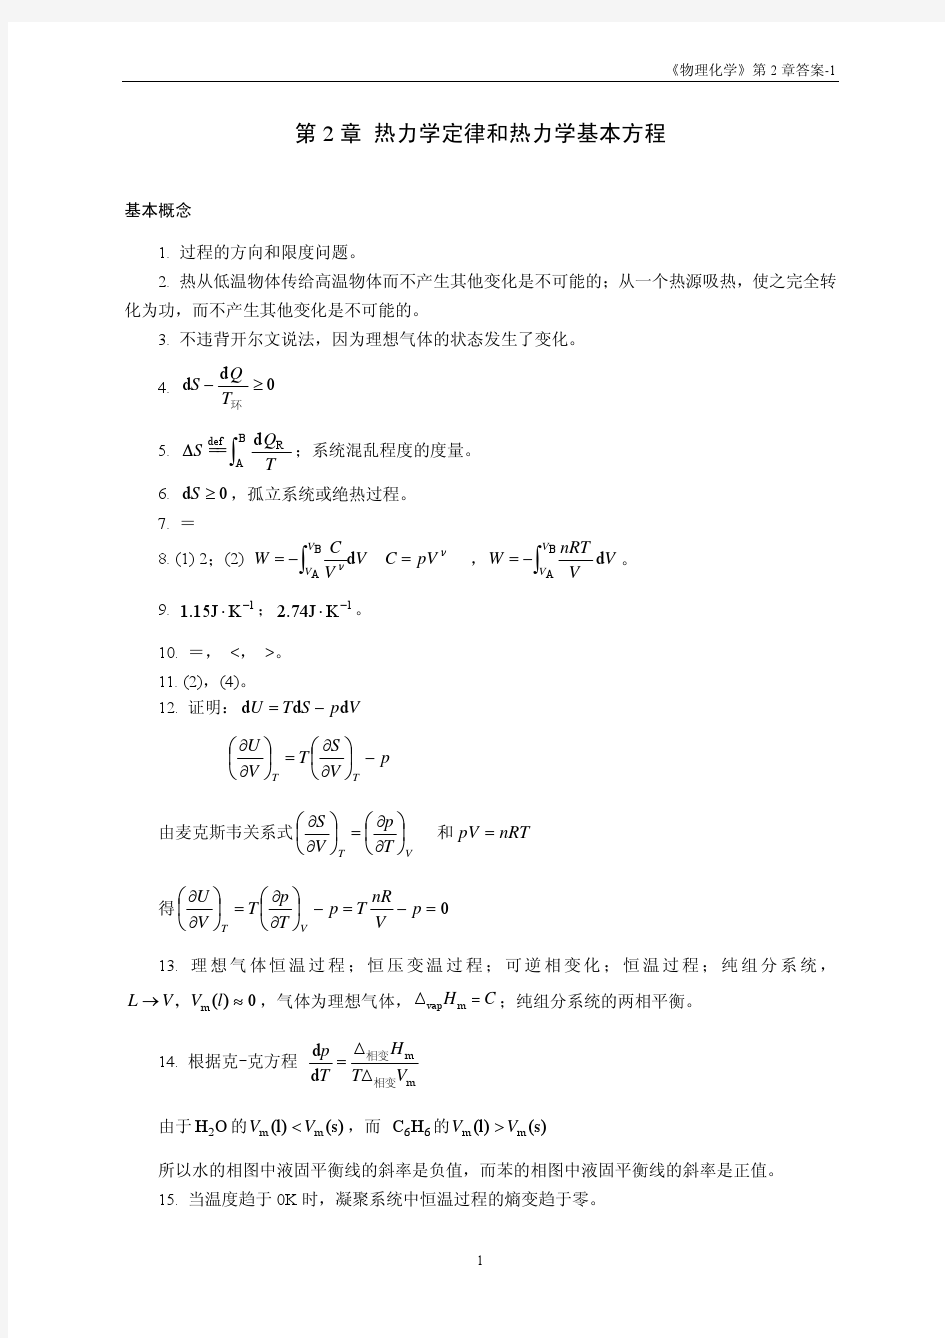 华东理工大学物理化学练习题答案2